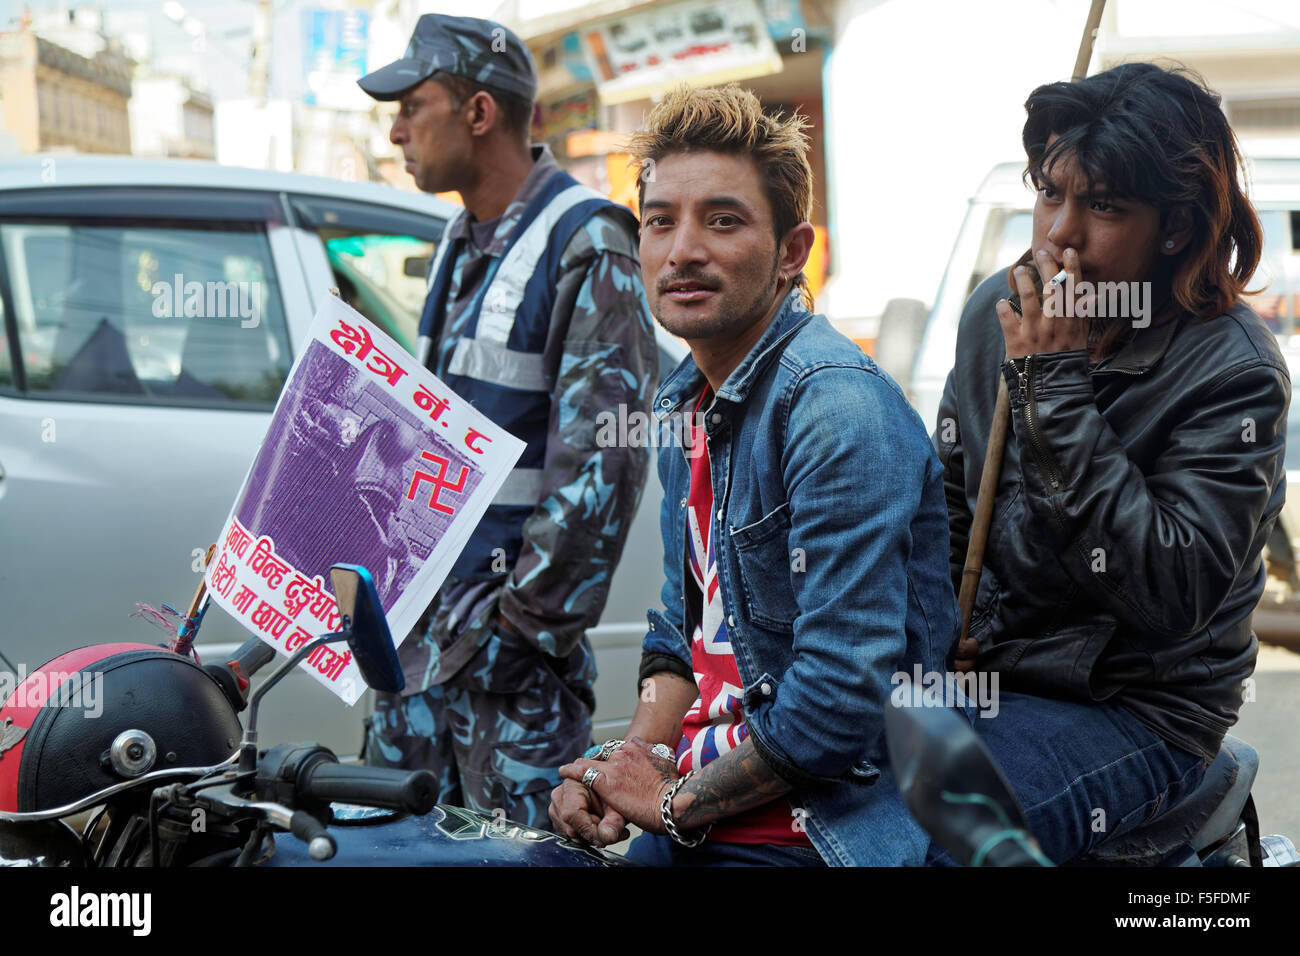 Katmandou, Népal - 3 novembre 2013 : rassemblement motards népalais pour un rassemblement politique. Le swastika est un important symbole hindou Banque D'Images